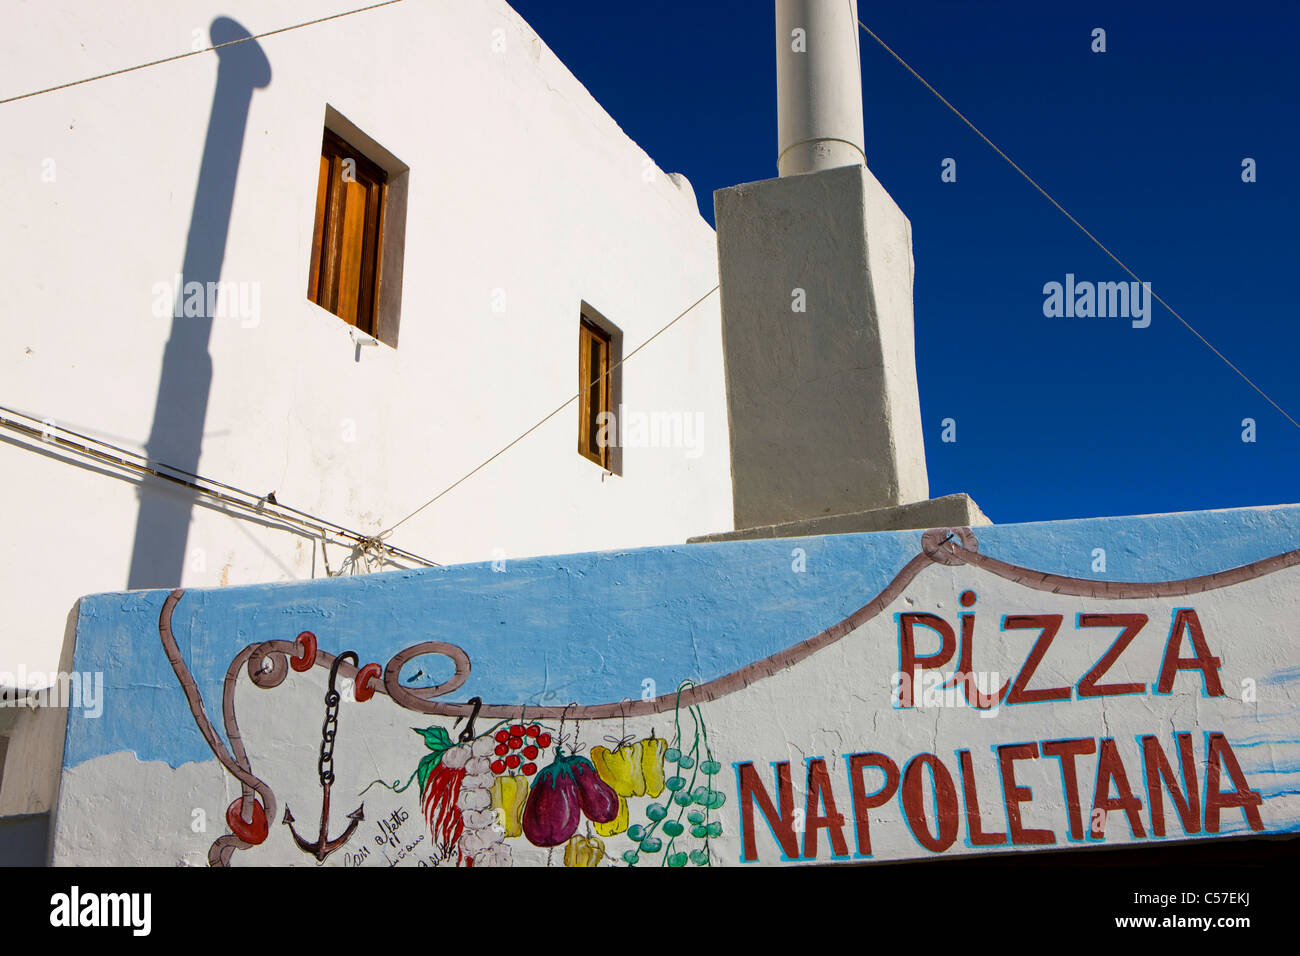 Stromboli, Italia, Europa, islas Lipari, la isla, la isla, el volcán, el humo, la aldea, casas, casas, restaurante Foto de stock